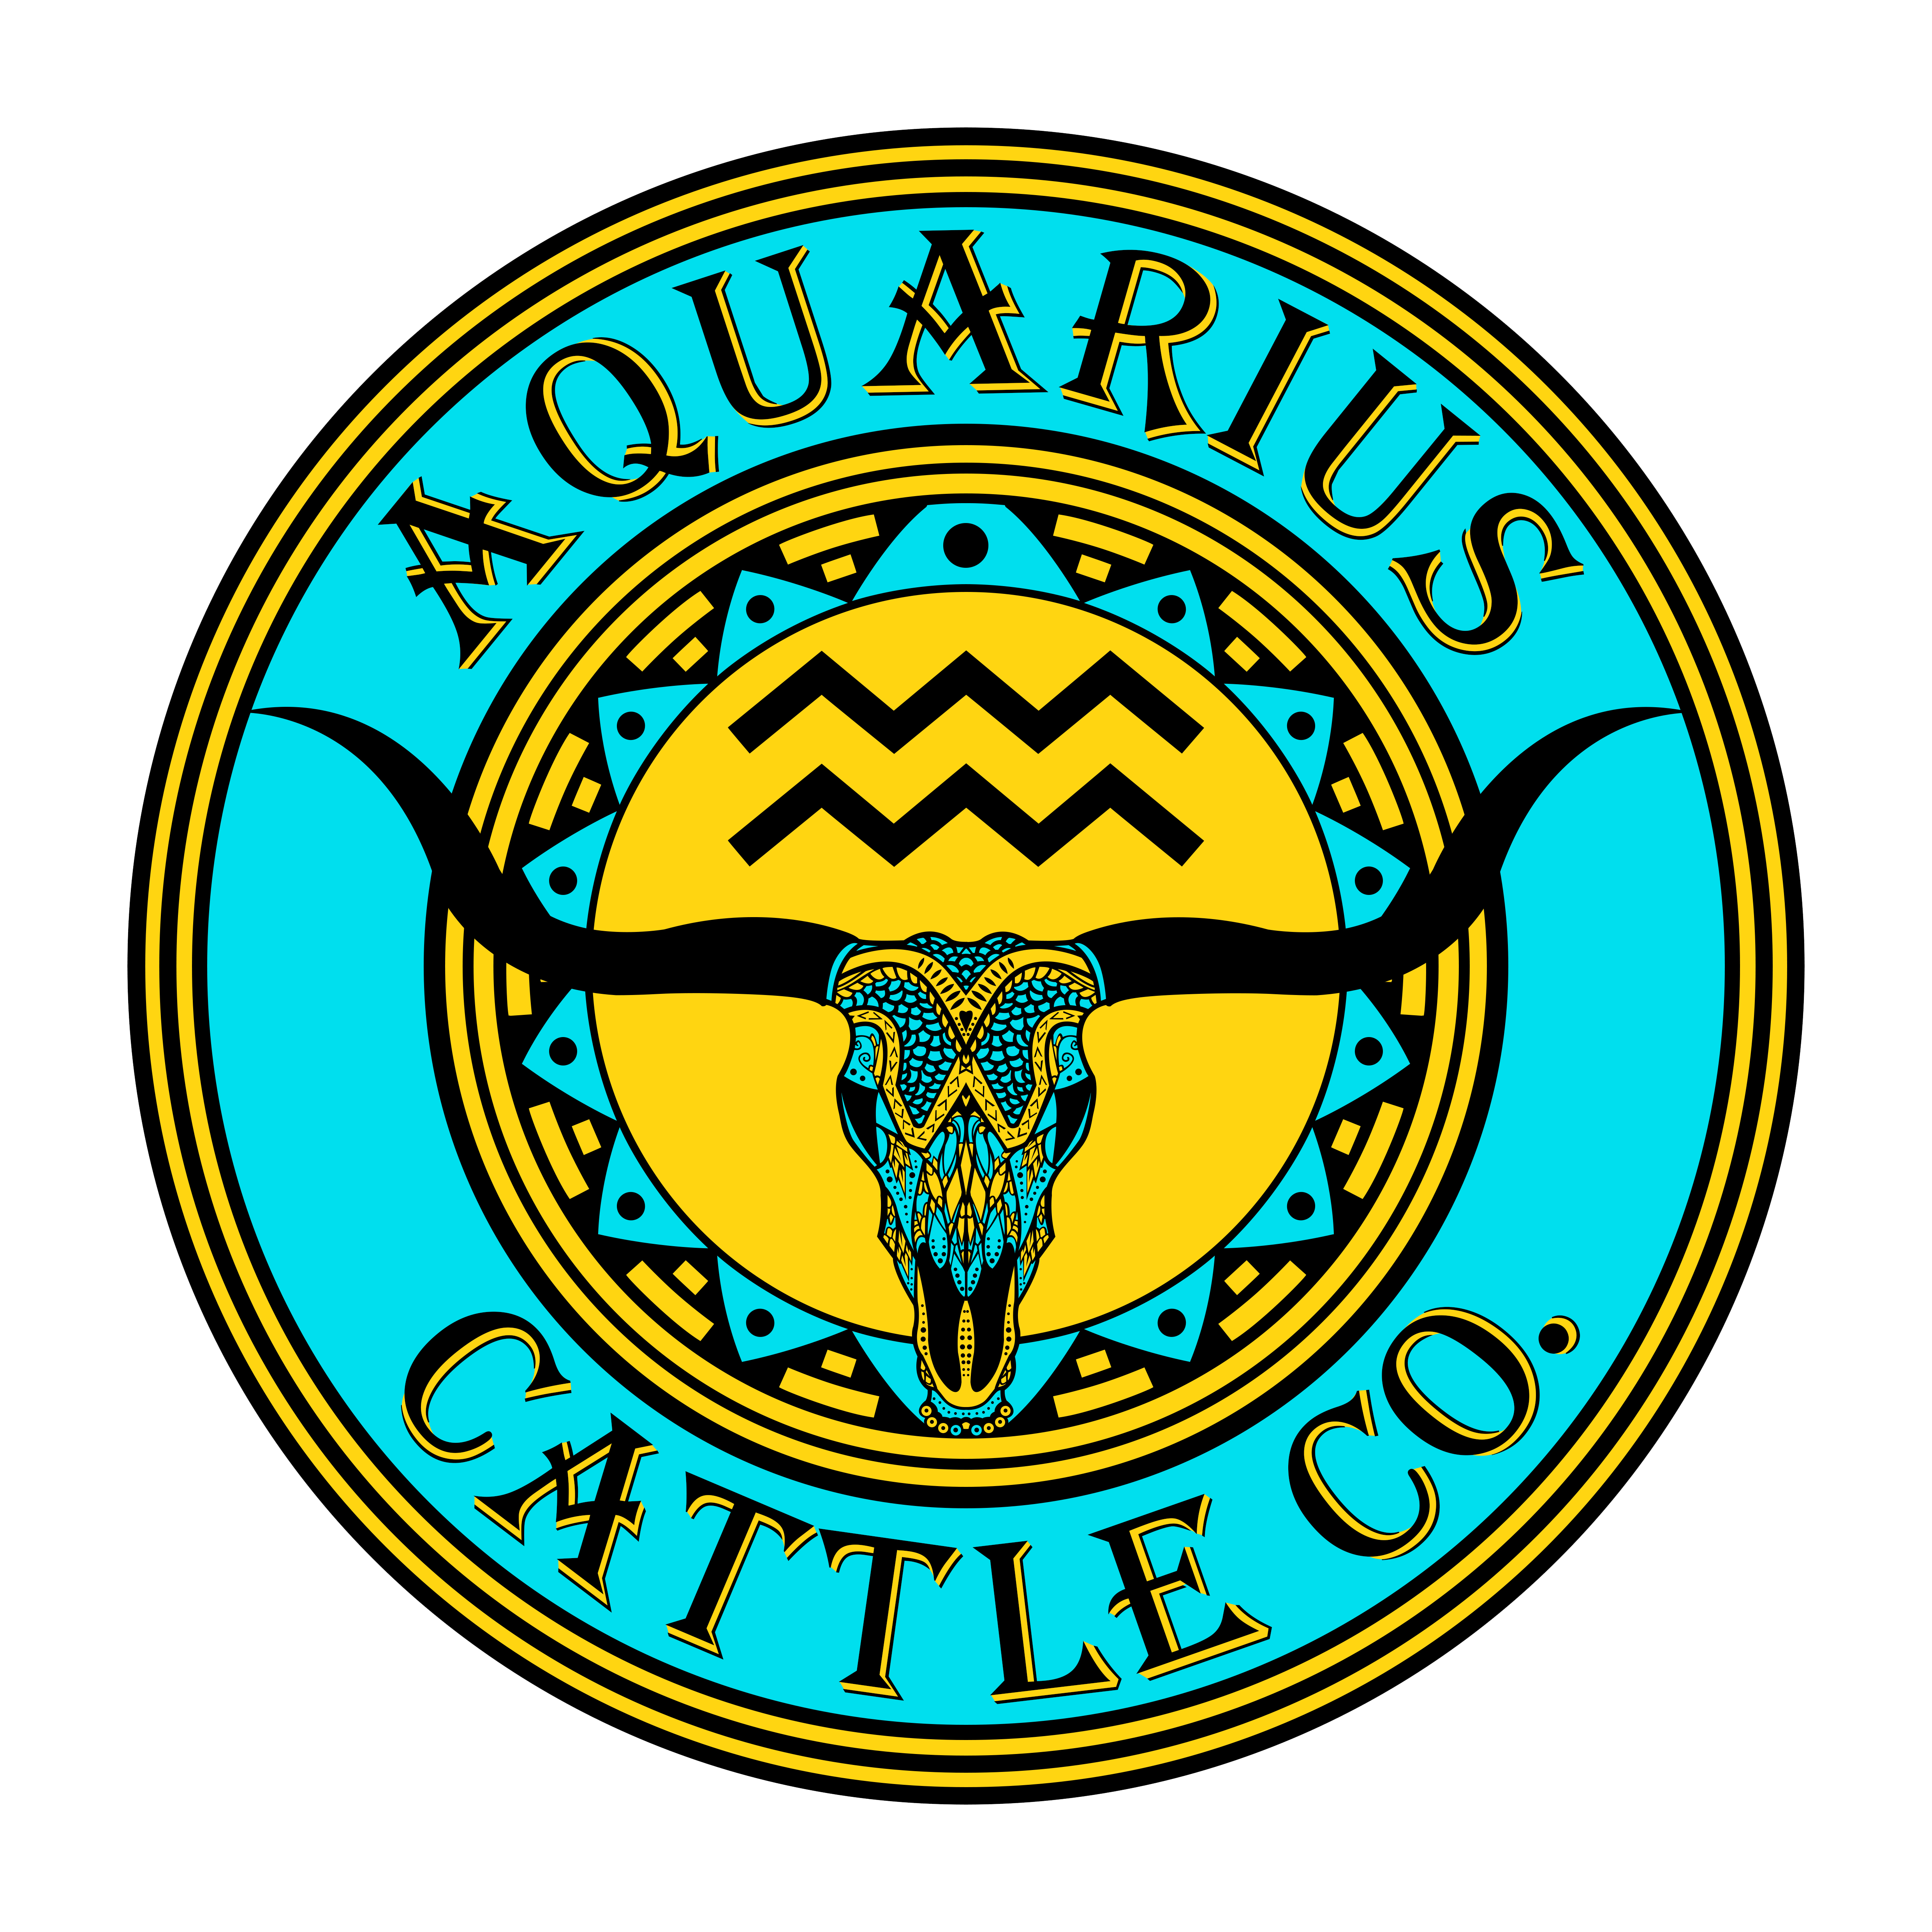 Aquarius Cattle Co.